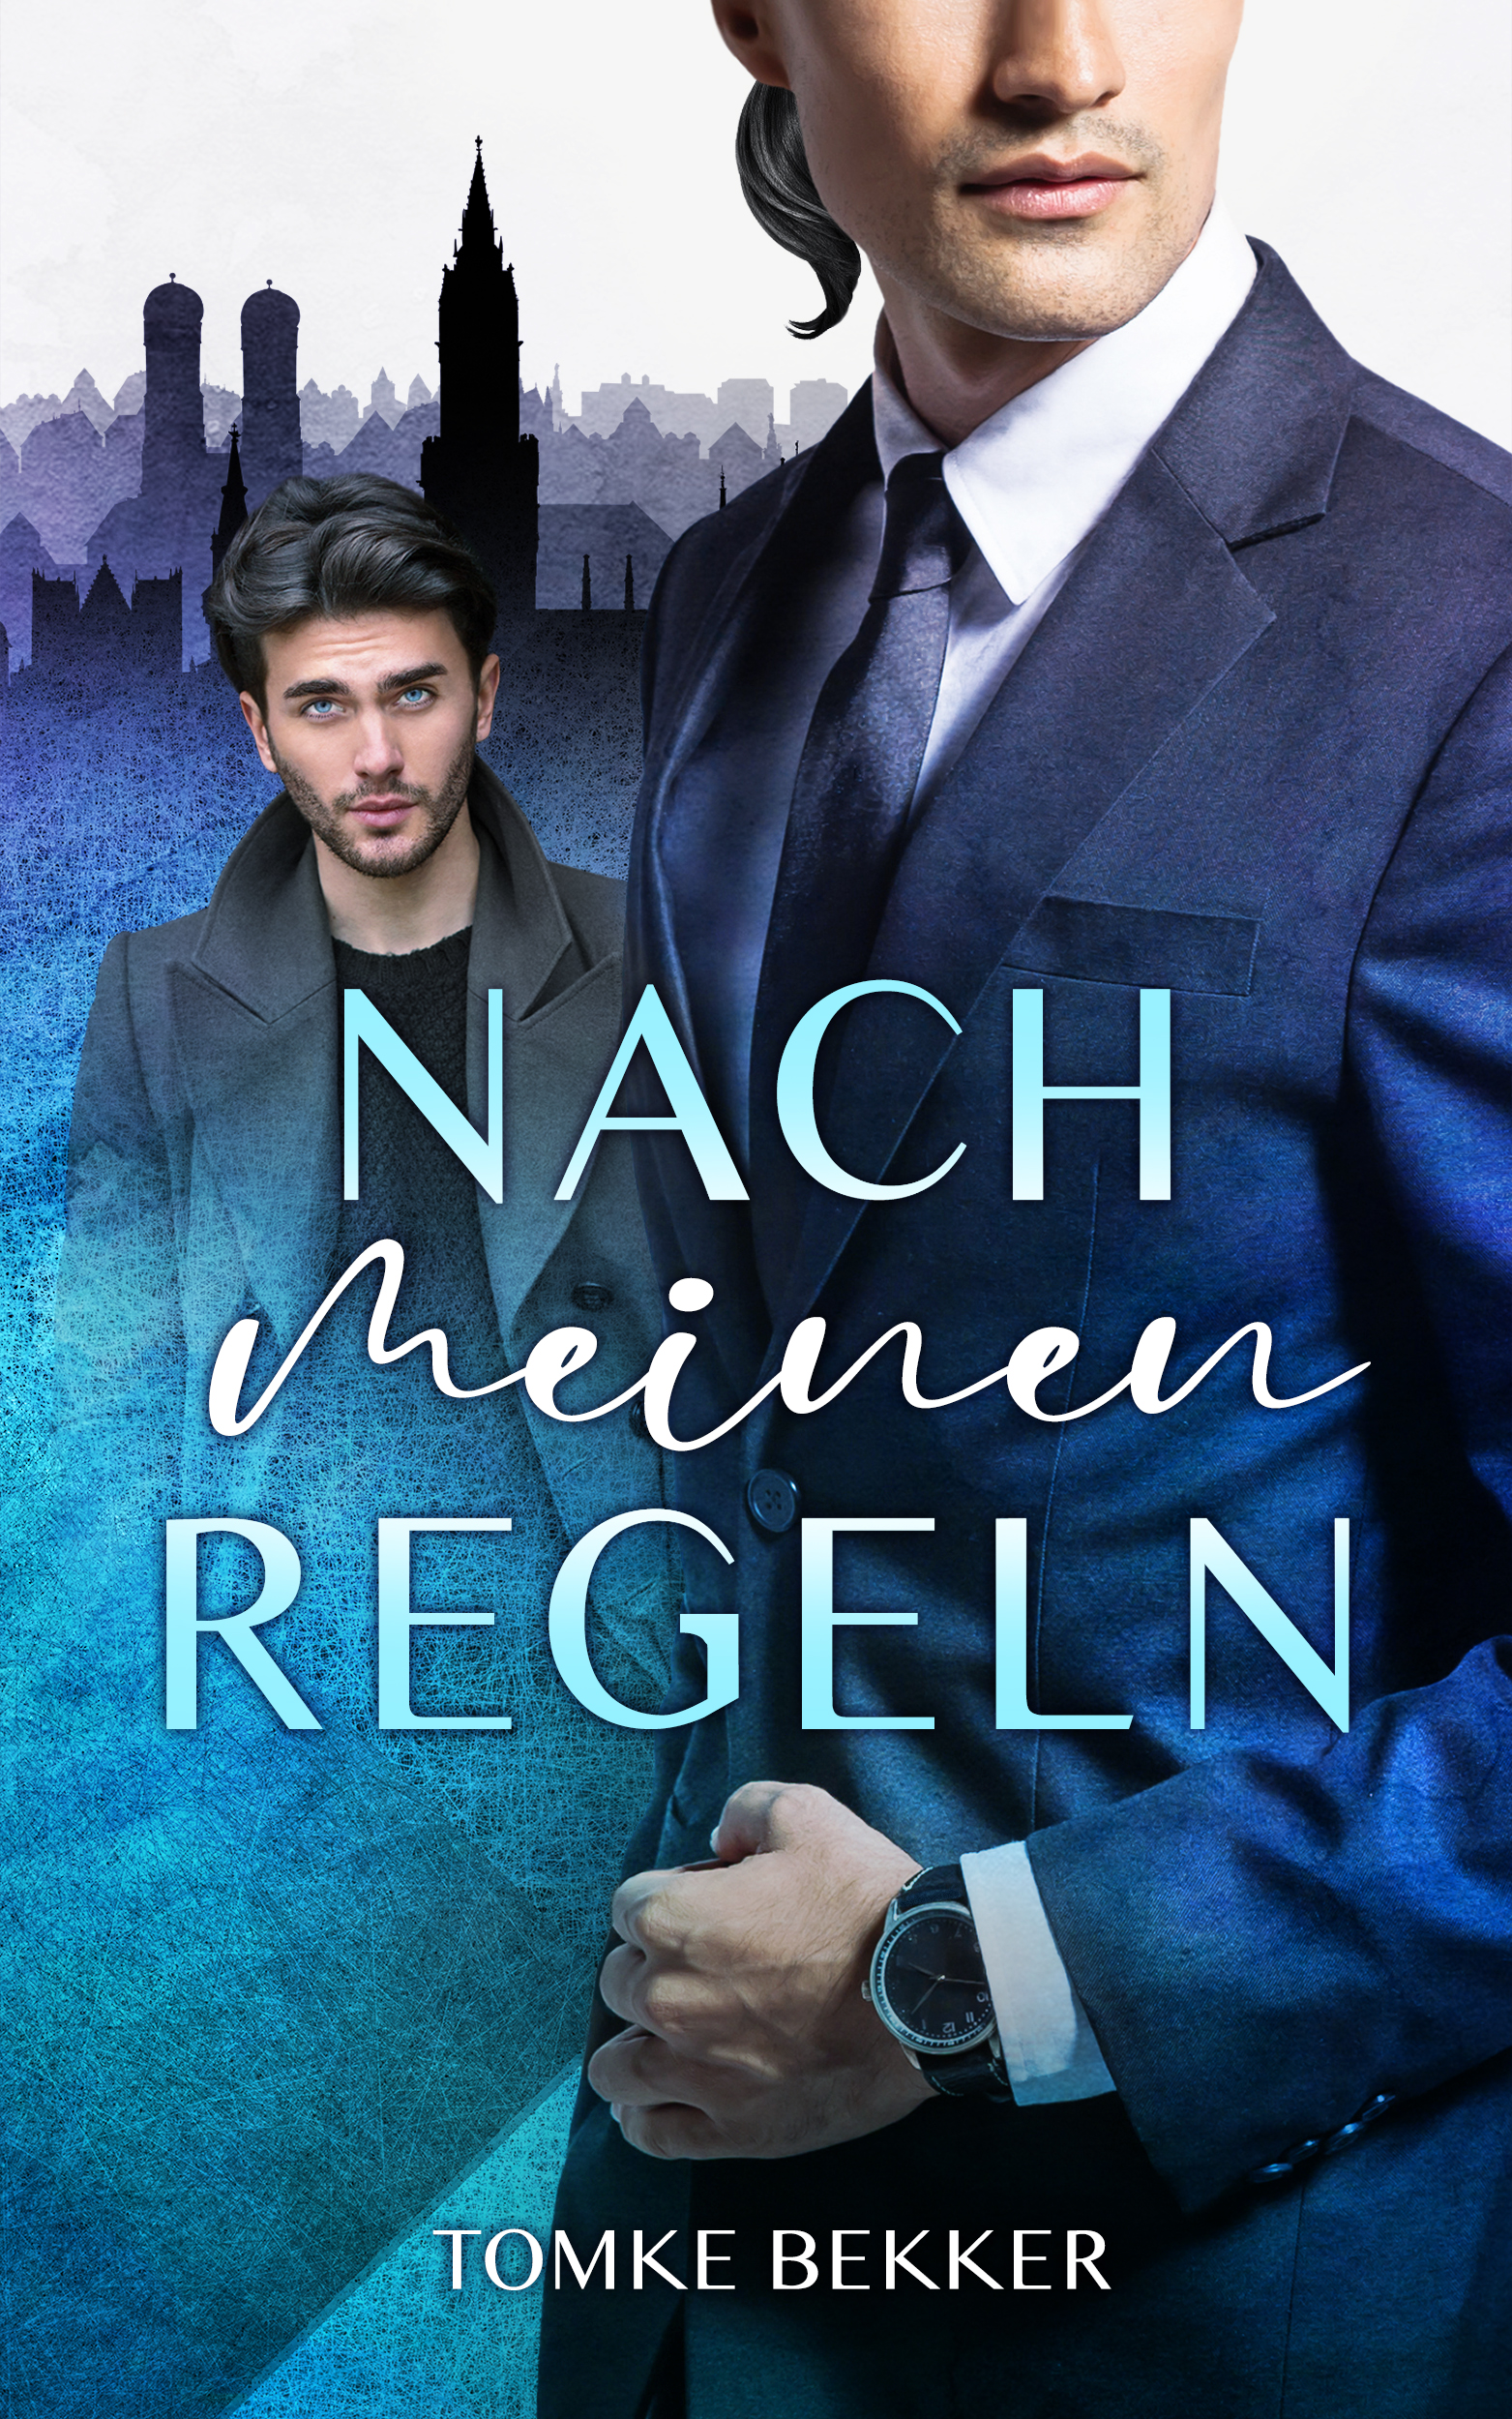 Cover von "Nach meinen Regeln", im Vordergrund ein Mann in blauem Anzug, im Hintergrund ein zweiter in casual Kleidung vor der Skyline der Stadt München